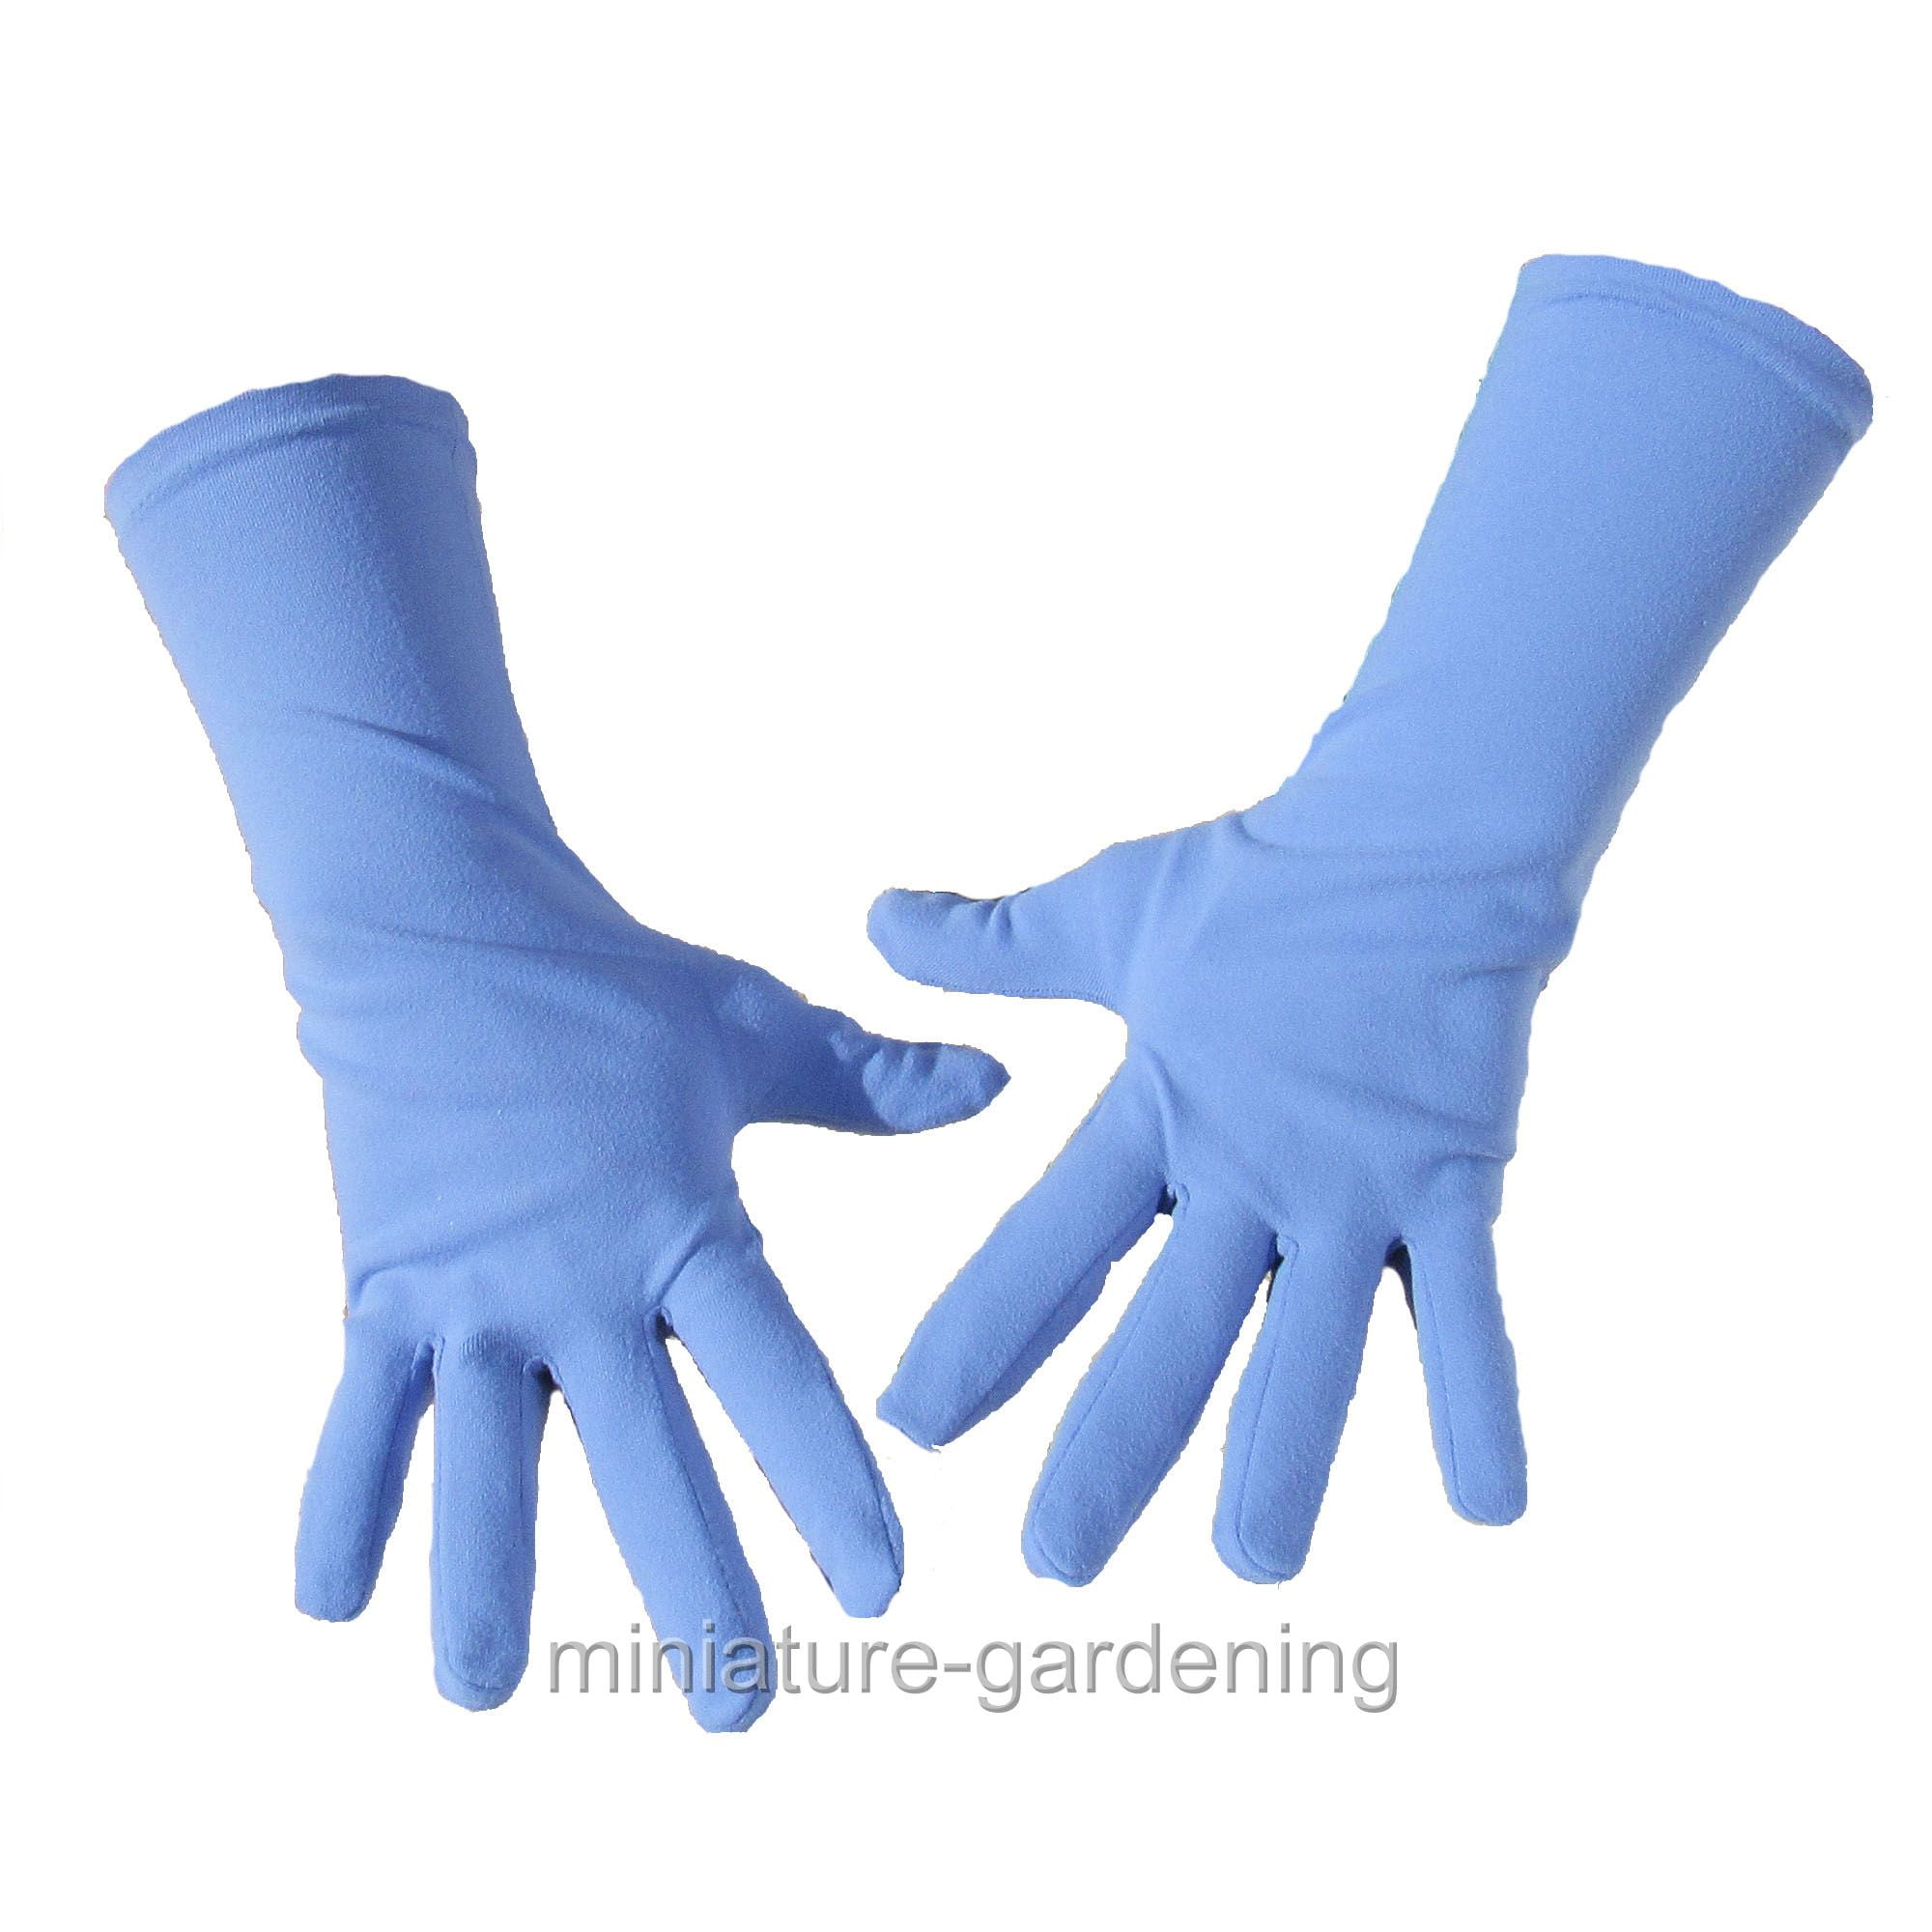 Size Medium Foxgloves Grip Gardening Gloves Periwinkle Blue 